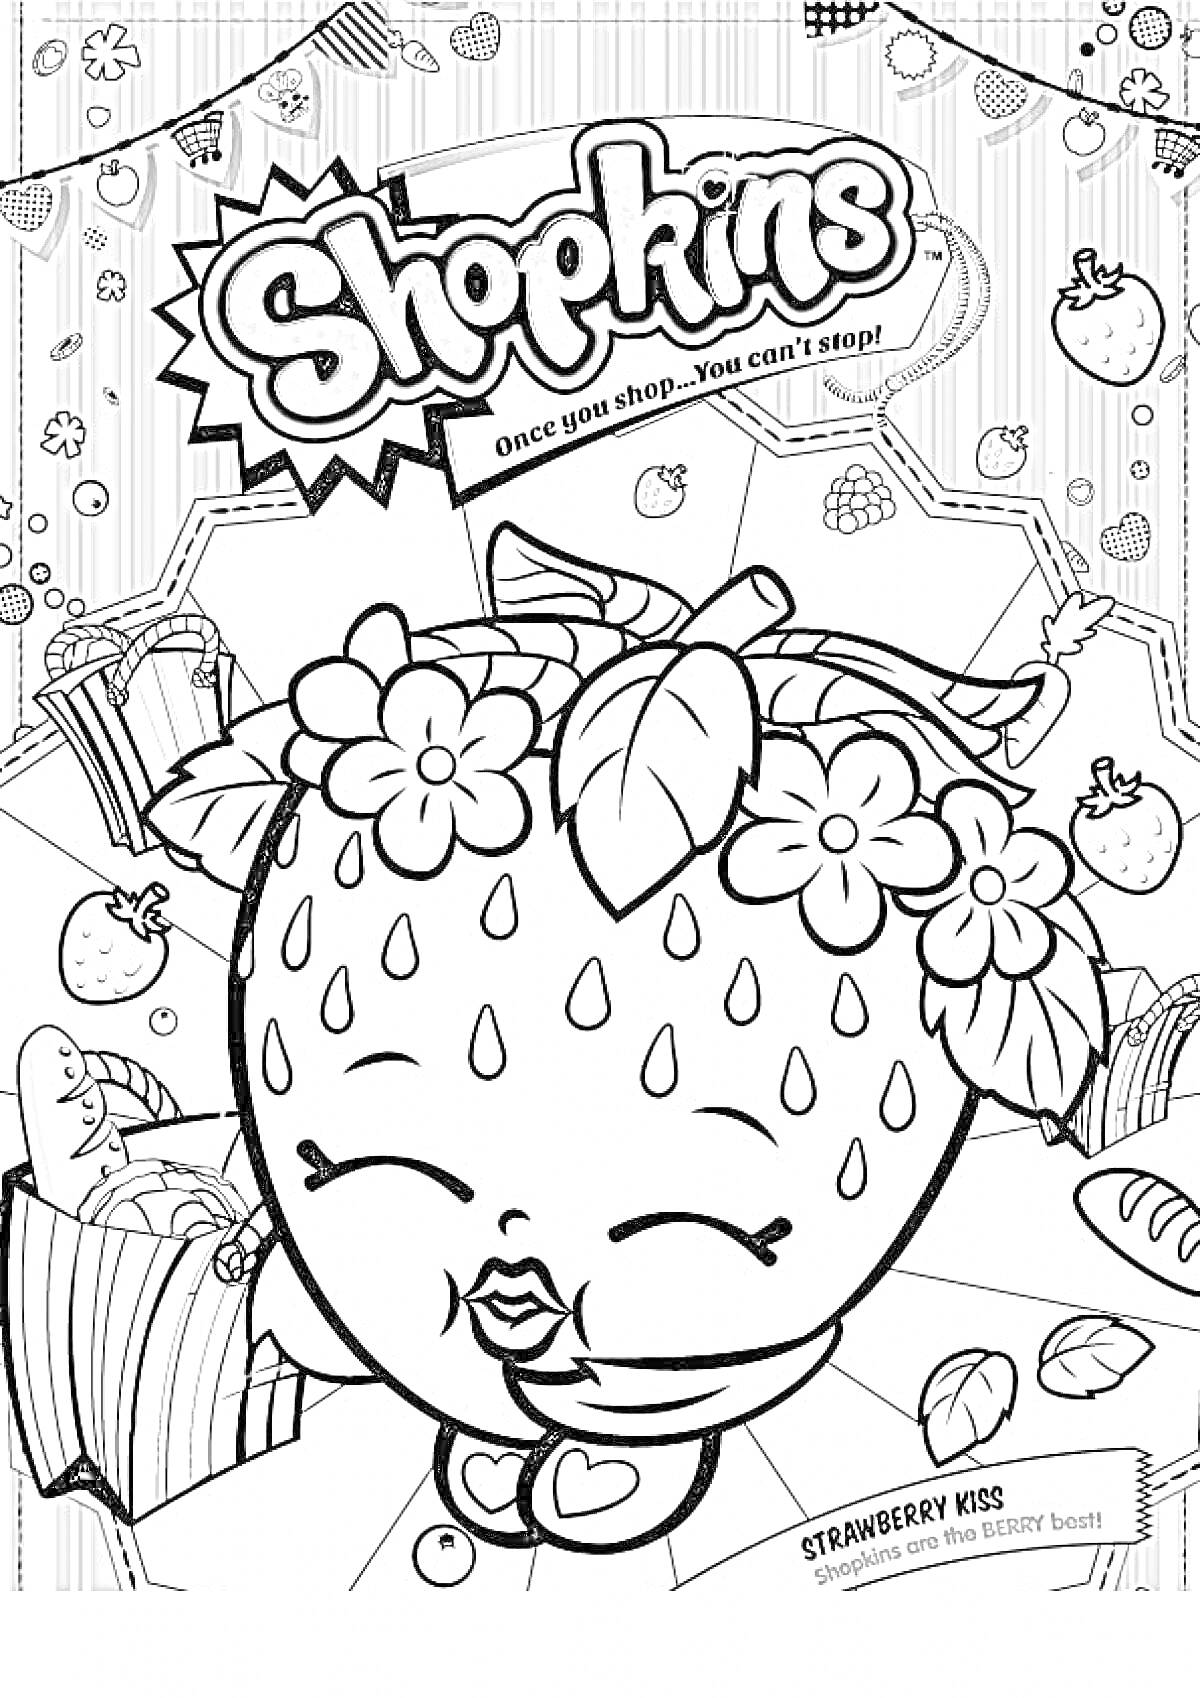 Раскраска Шопкинс: Клубничка с цветами и листиками на голове, сундучок, косынка с сердечками, мелкие ягодки и листья на заднем плане